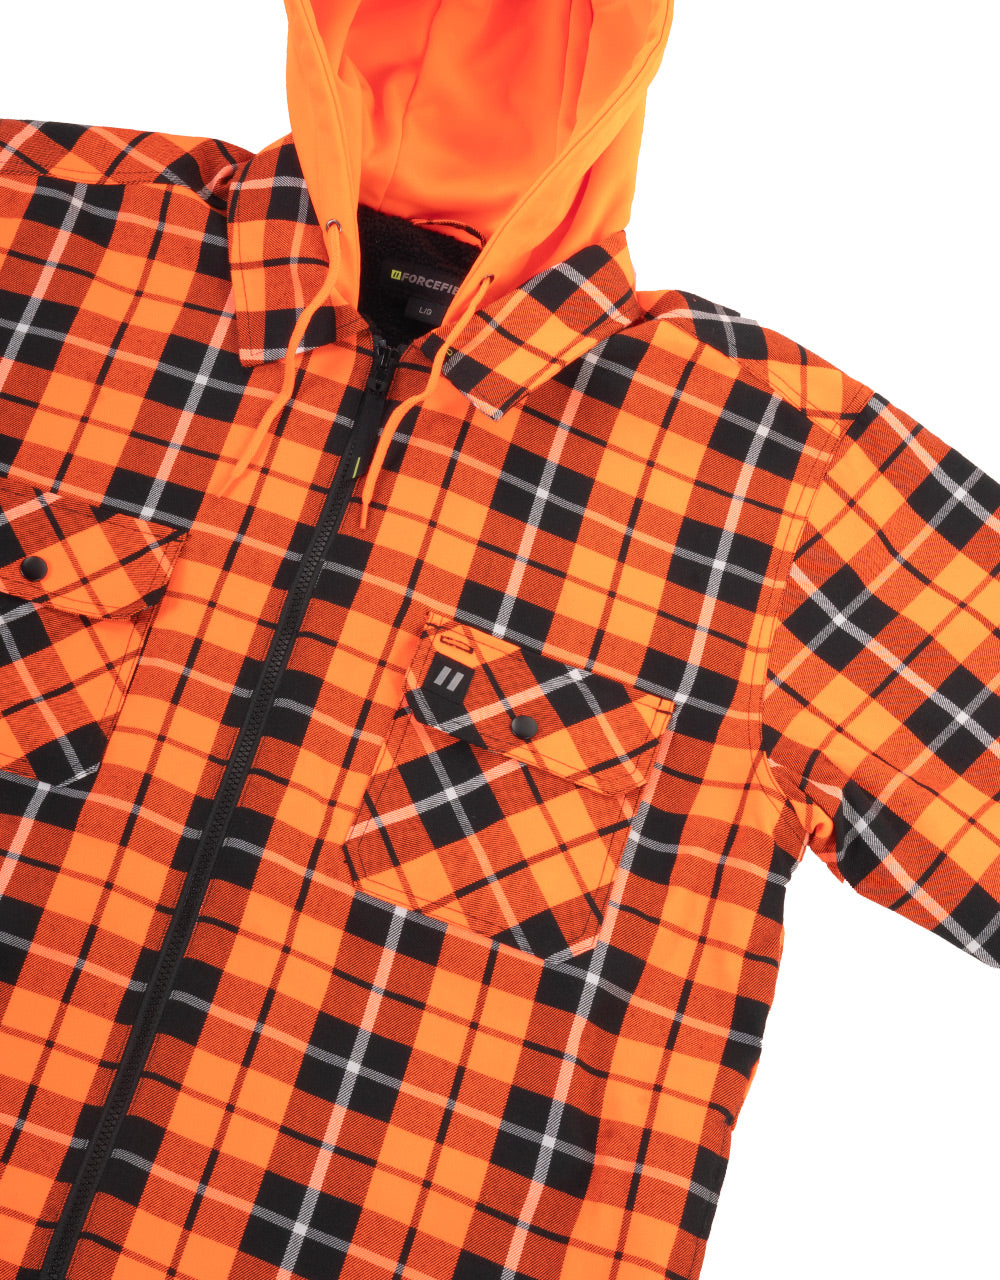 Veste chemise à capuche en flanelle à carreaux tartan orange haute visibilité, doublée de sherpa, avec fermeture éclair sur le devant 